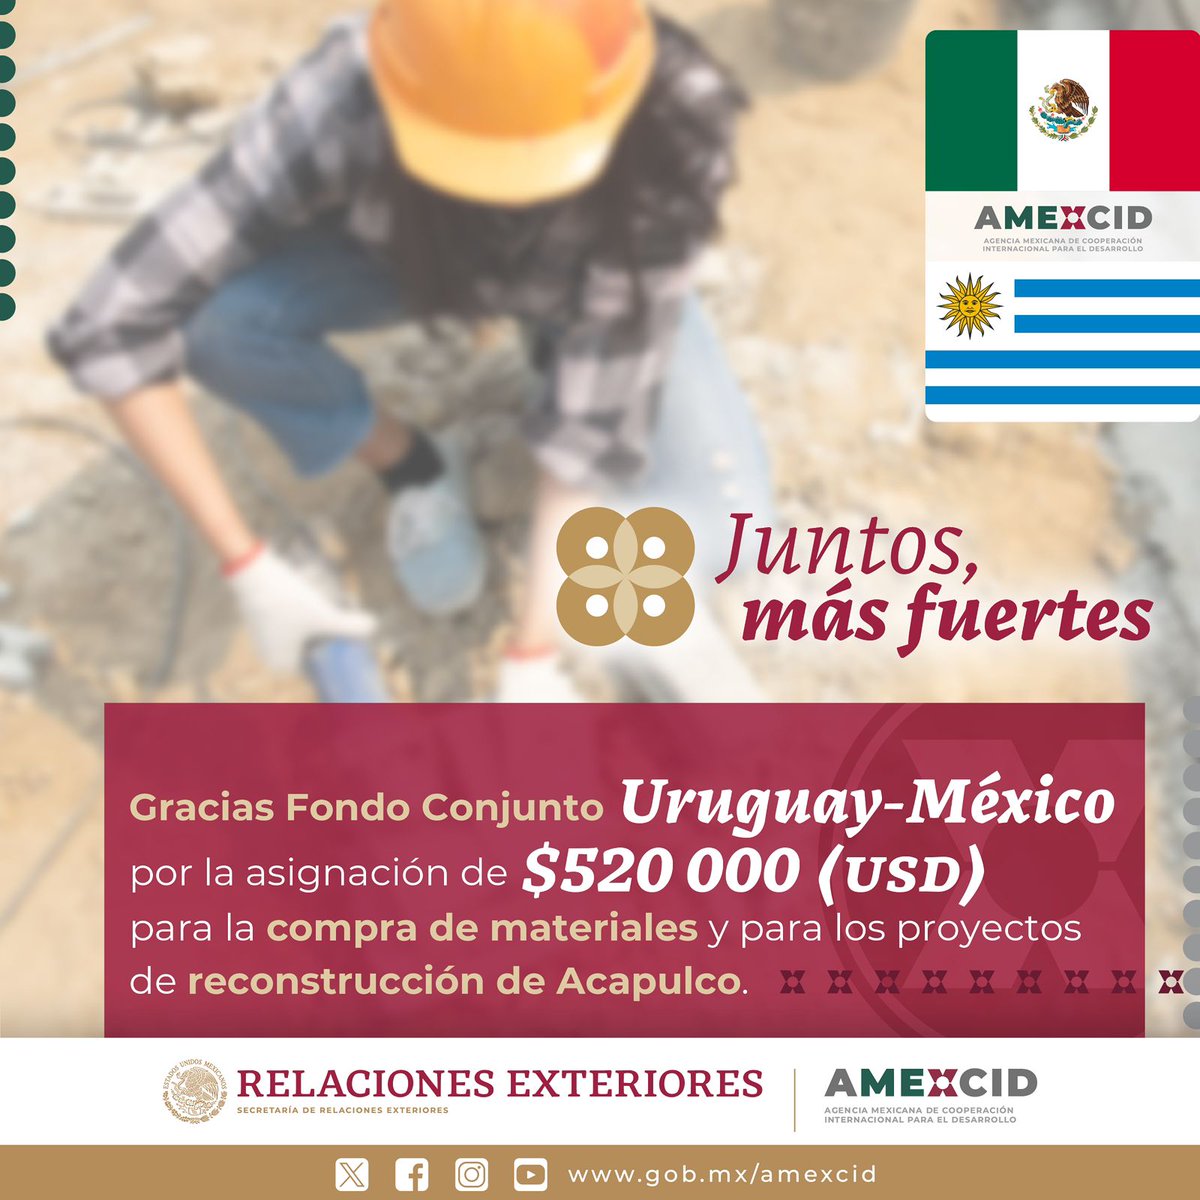 📌 La @SRE_mx agradece, a través de la @AMEXCID, al Fondo Conjunto Uruguay - México, por la asignación de 520 mil dólares, para la compra de materiales y para los proyectos de reconstrucción de Acapulco, tras el paso de #Otis.

🇲🇽🤝🇺🇾
#DiplomaciaCercaDeTi
#CooperarEsCompartir